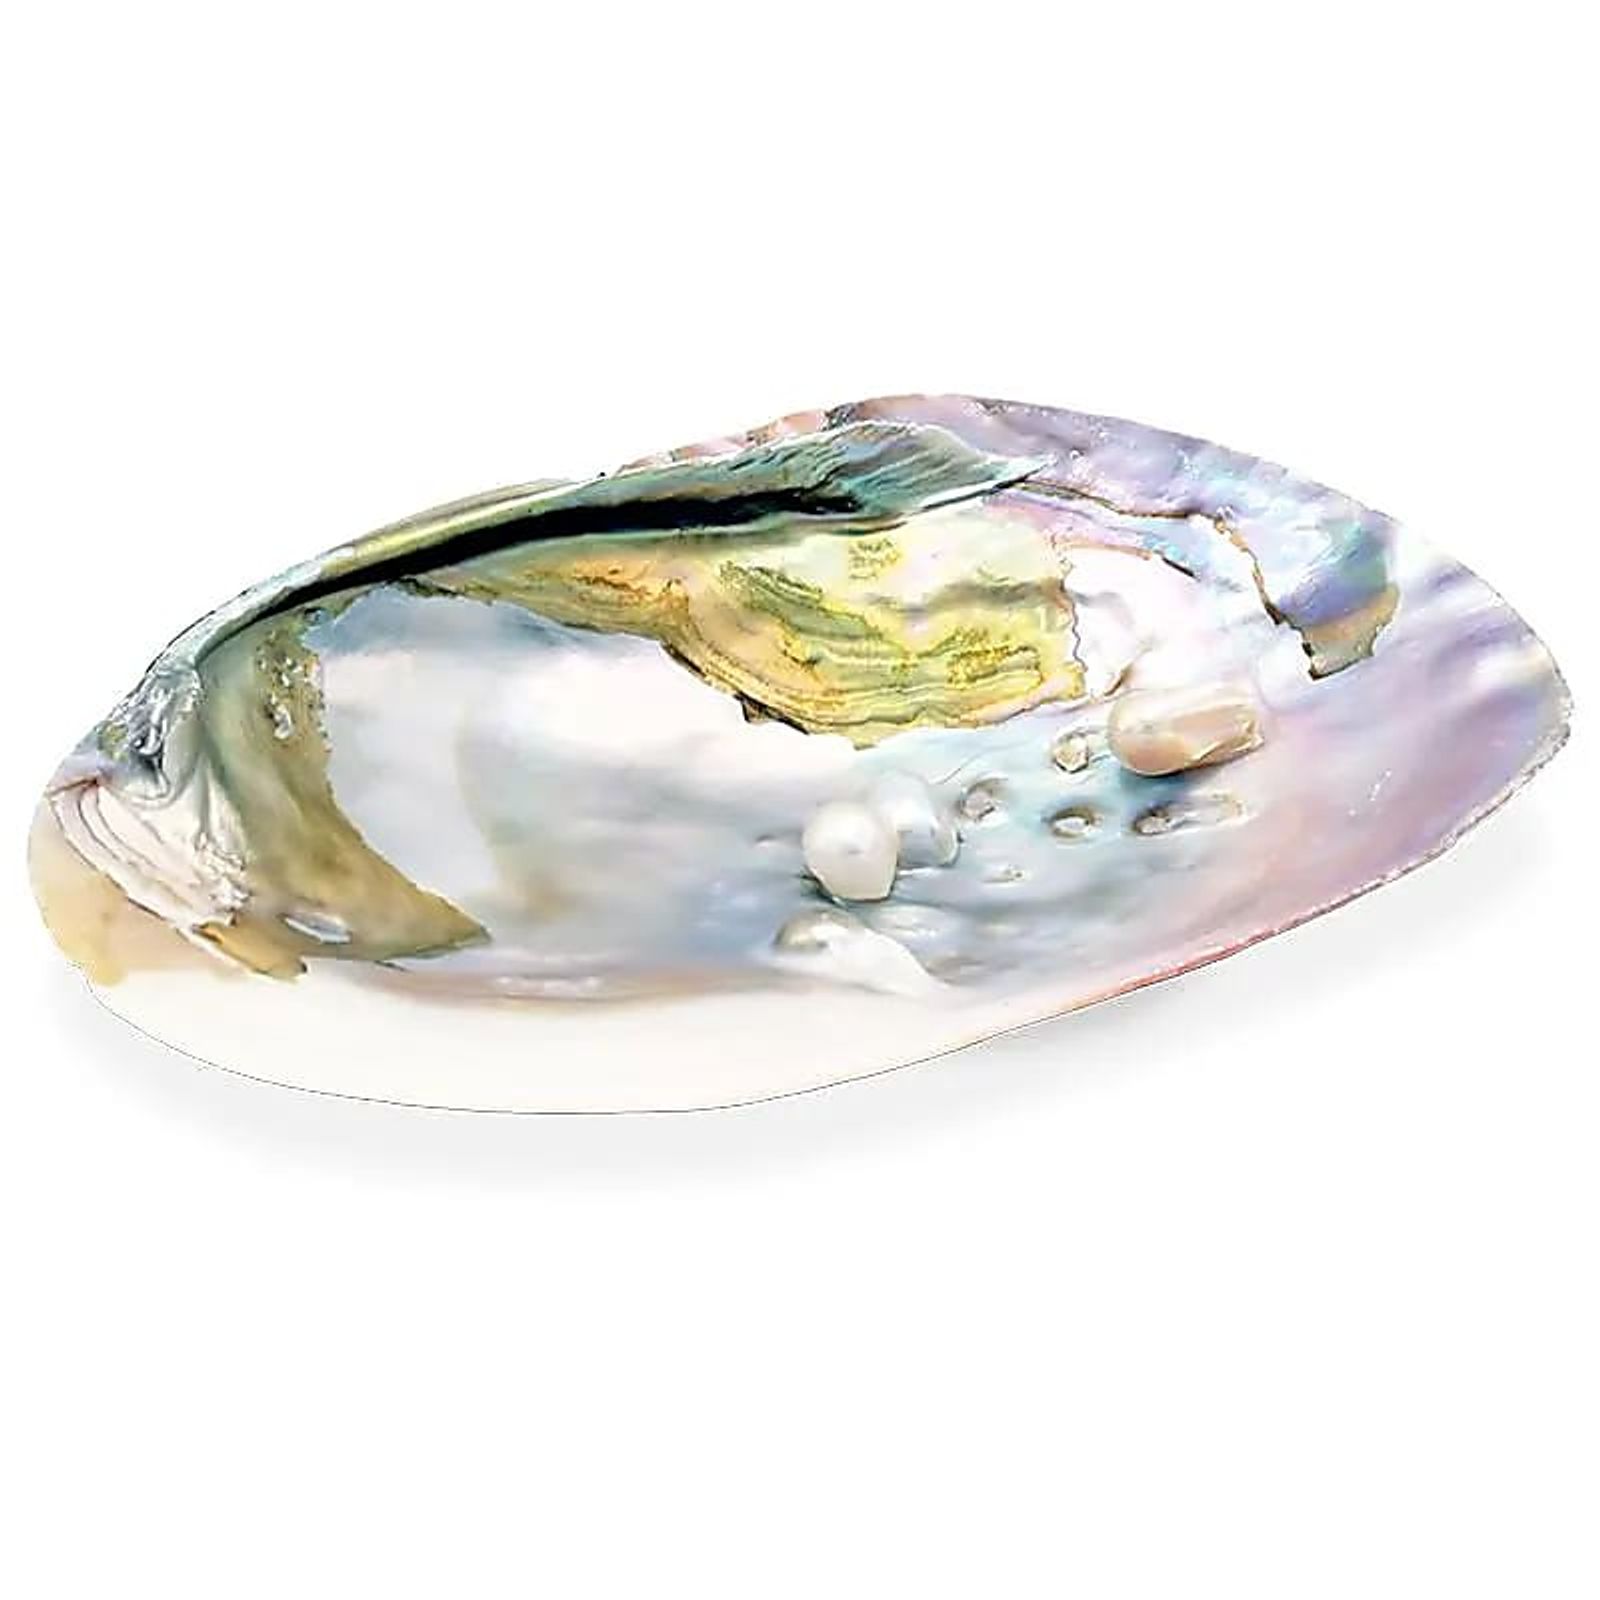 Perlmutt-Muschel mit Perlen -- 15-16 cm